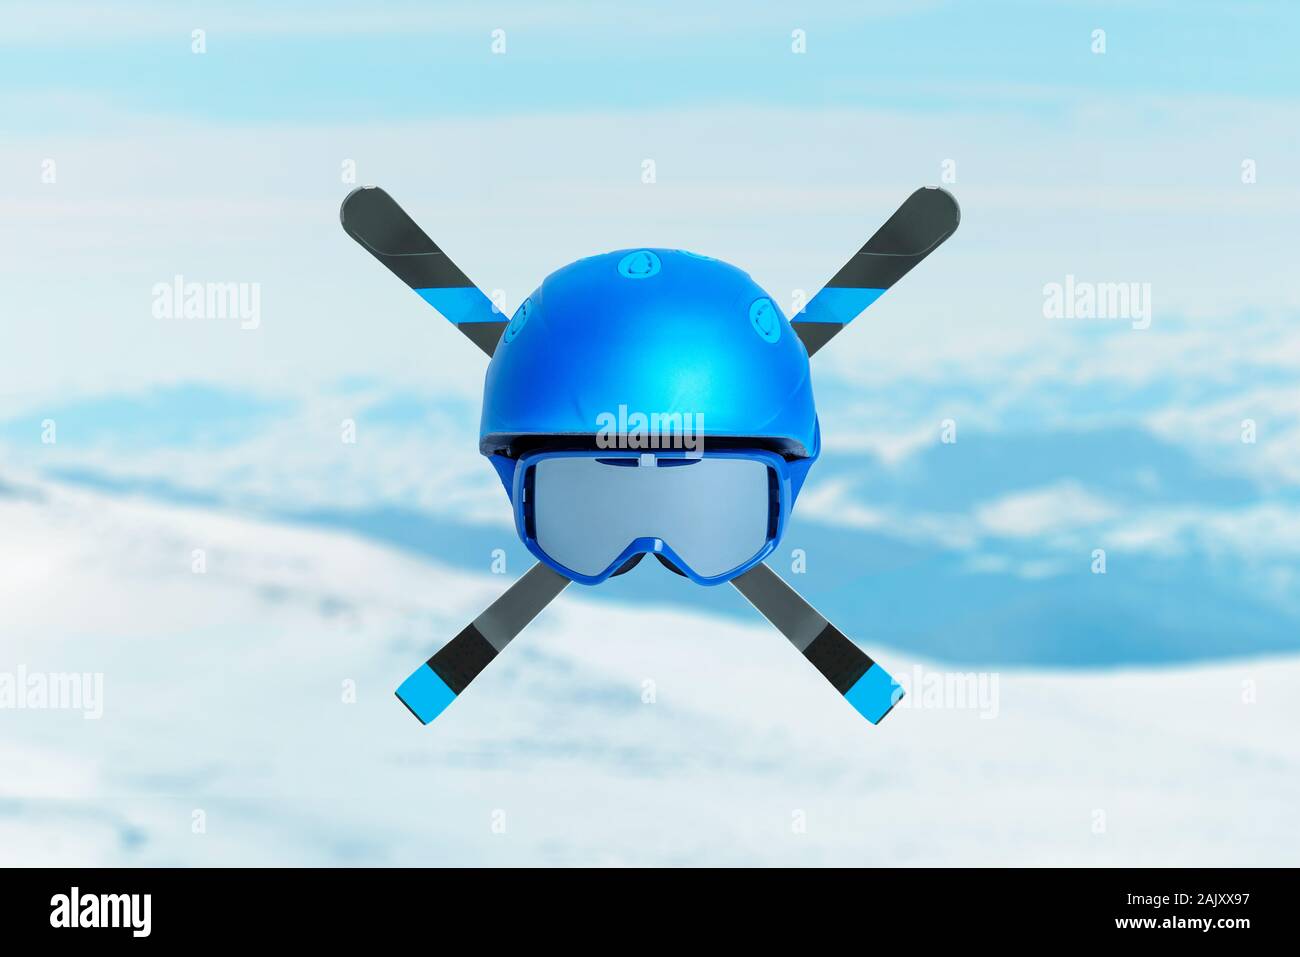 Casque de ski bleu avec des lunettes et les skis croisés. Concept d'extreme sport alpin. Des pics de montagne en arrière-plan Banque D'Images